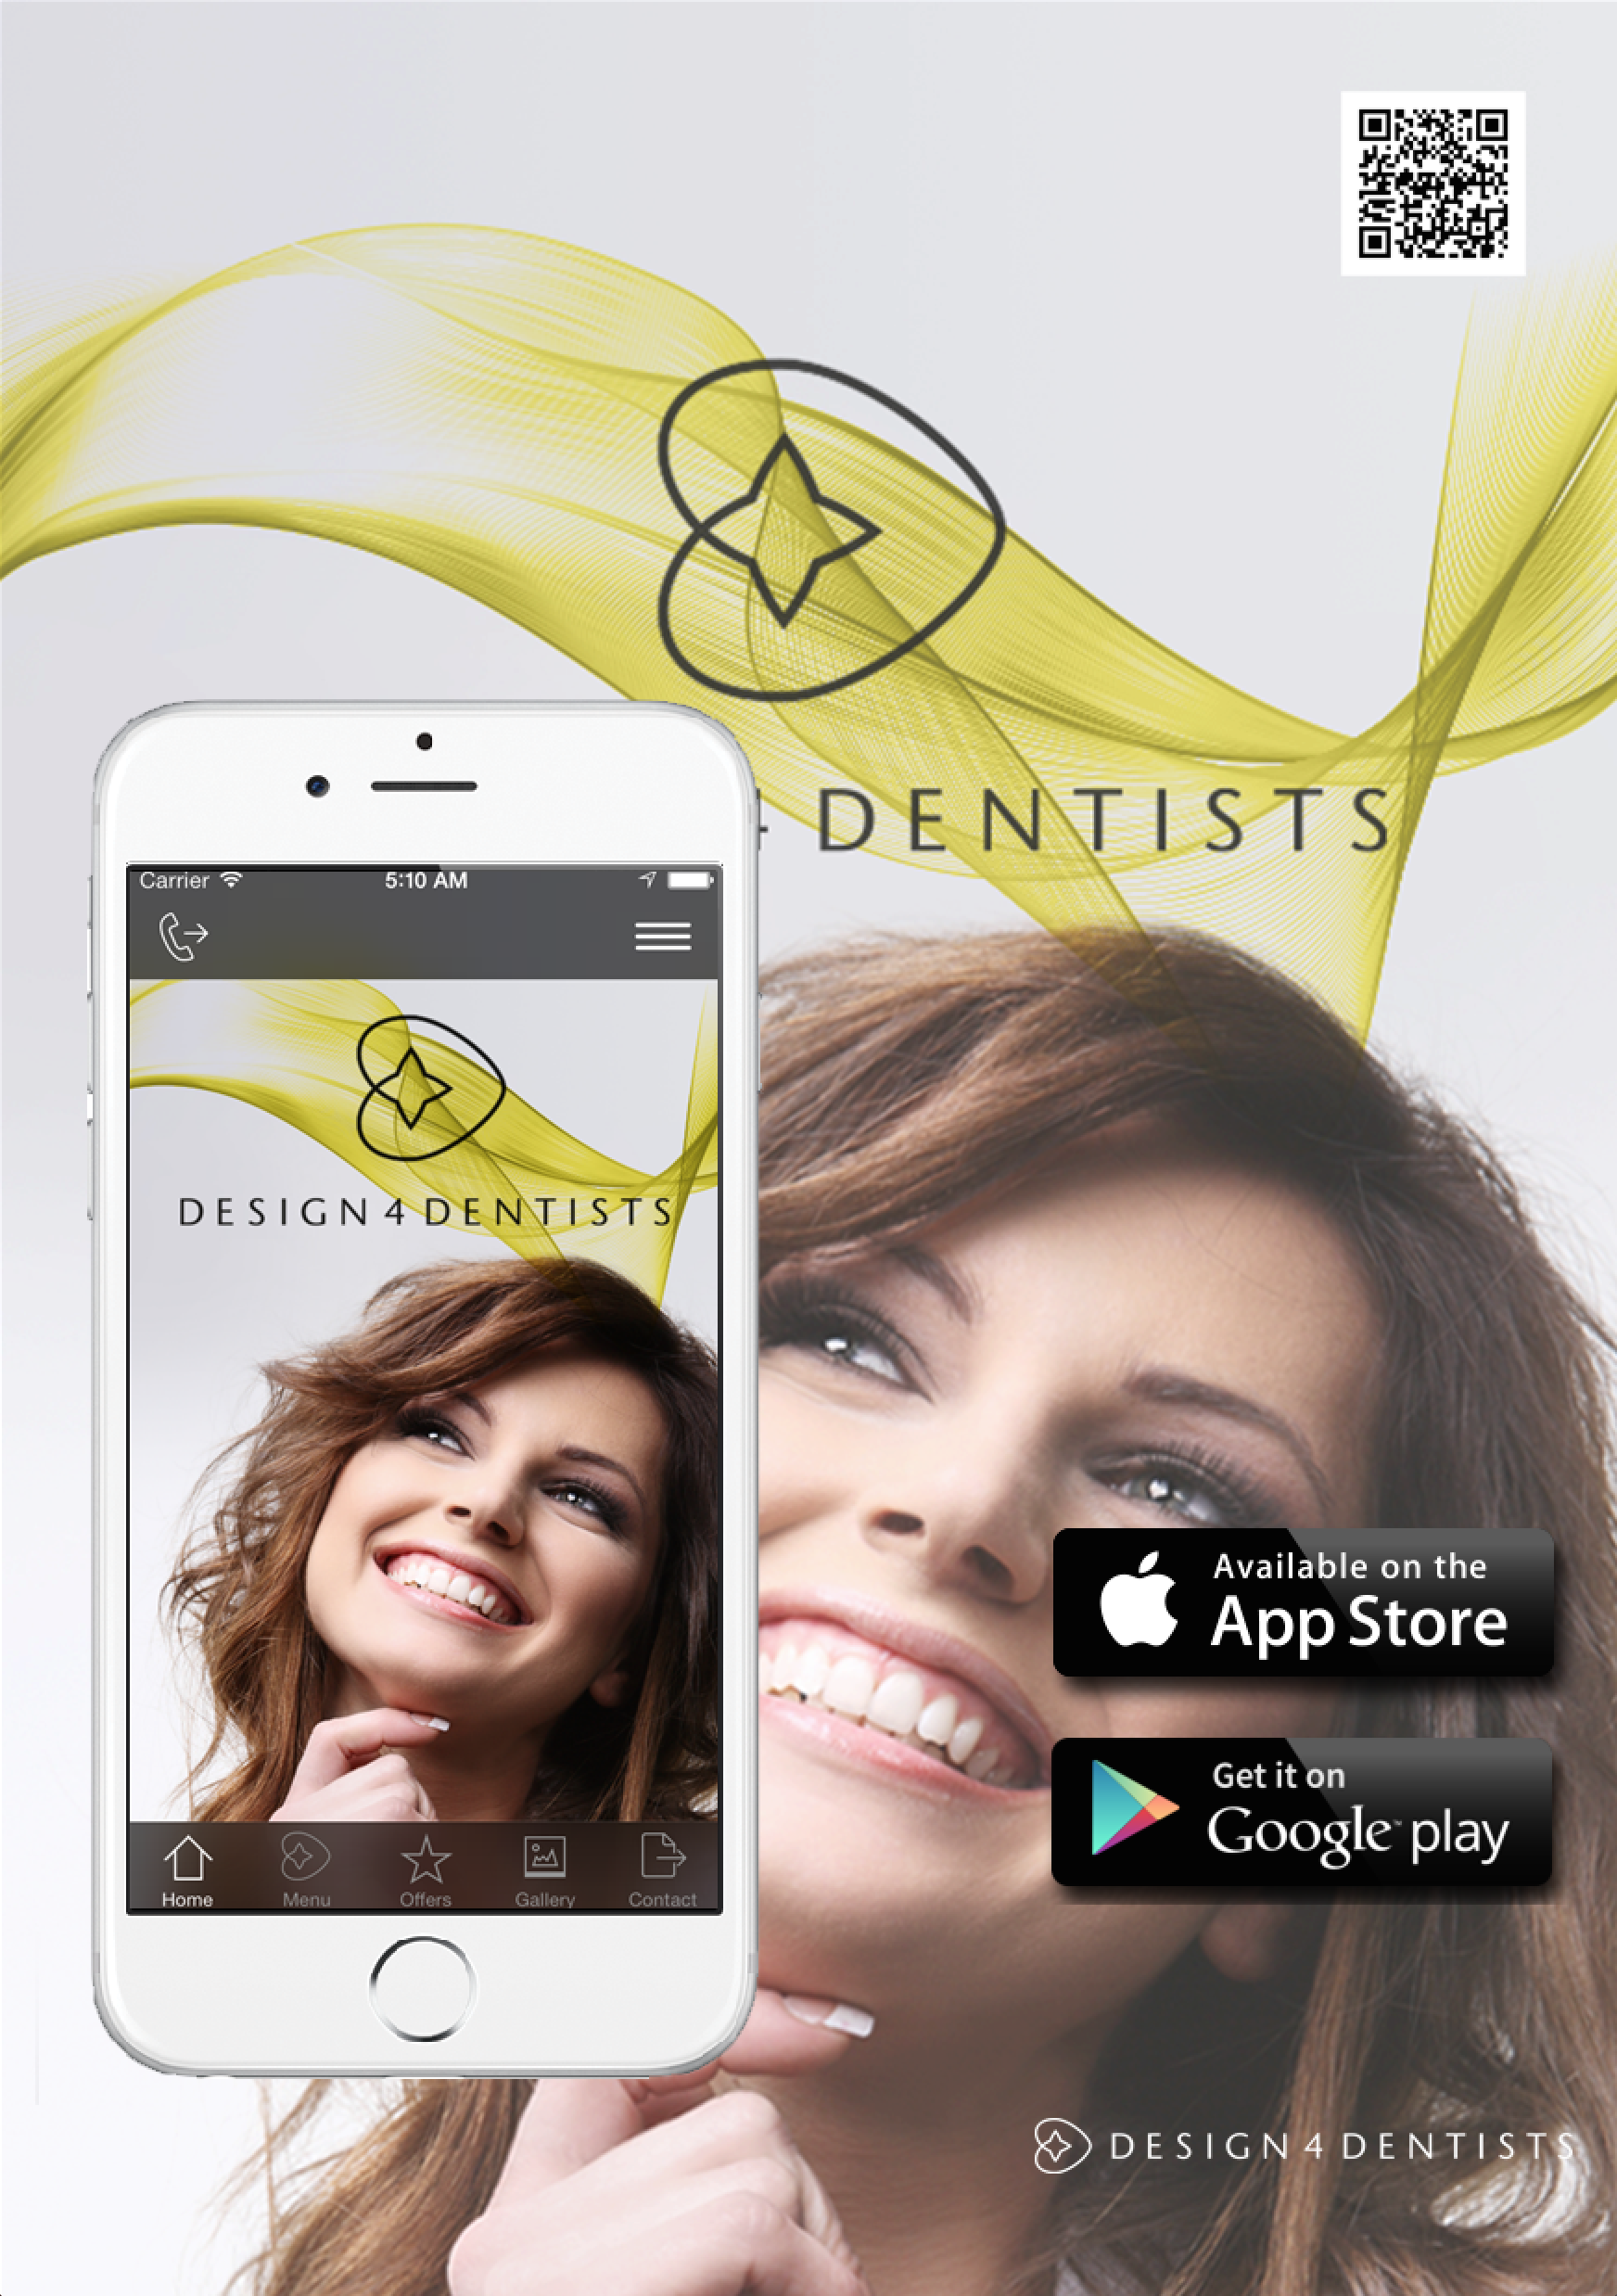 Mobile Dental App Poster